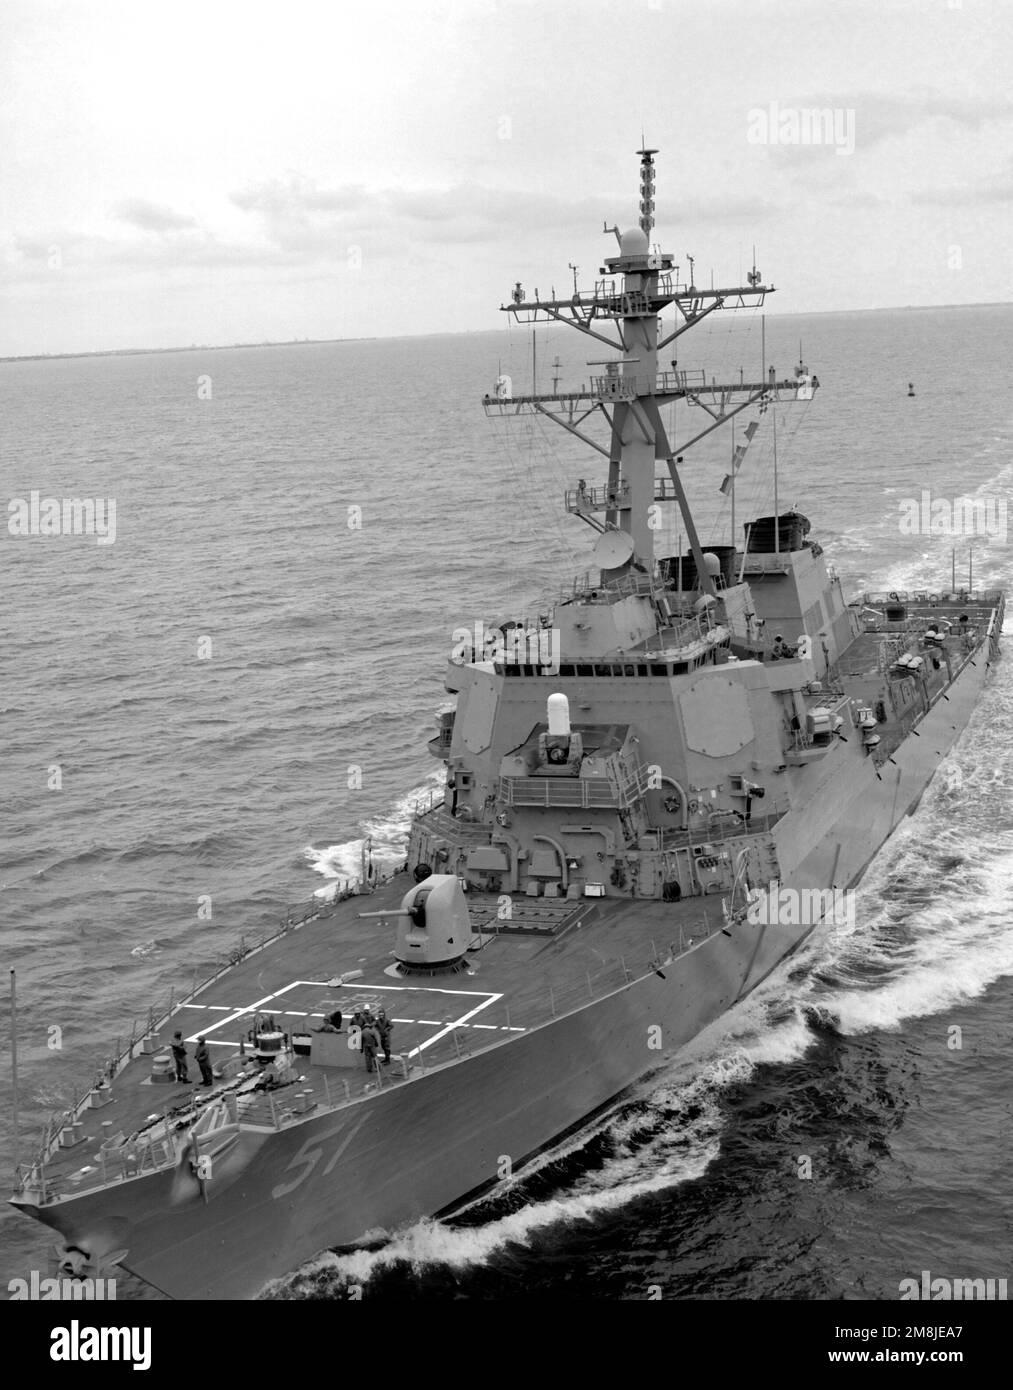 Una vista de arco de puerto del destructor de misiles guiado USS ARLEIGH BURKE (DDG-51) en marcha frente a las Capas de Virgnia. Base: USS Arleigh Burke País: Océano Atlántico (AOC) Foto de stock